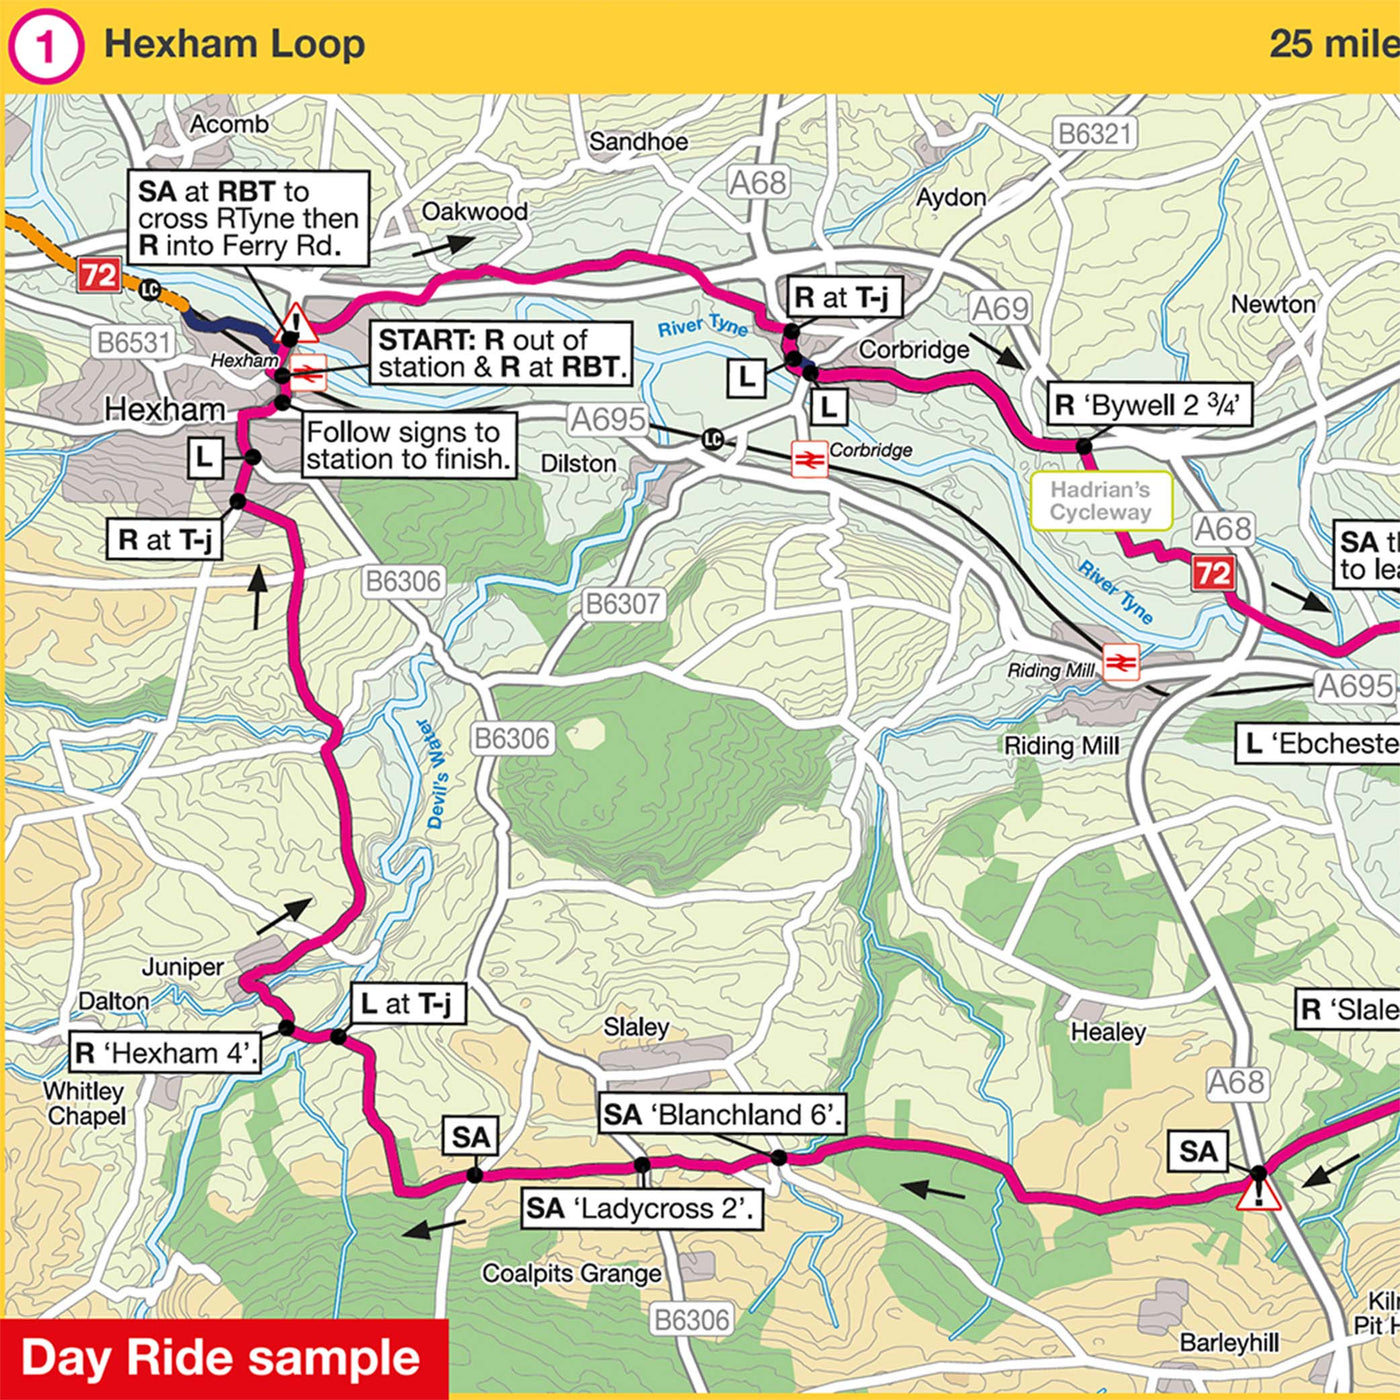 Day ride sample: Hexham Loop, 25 miles